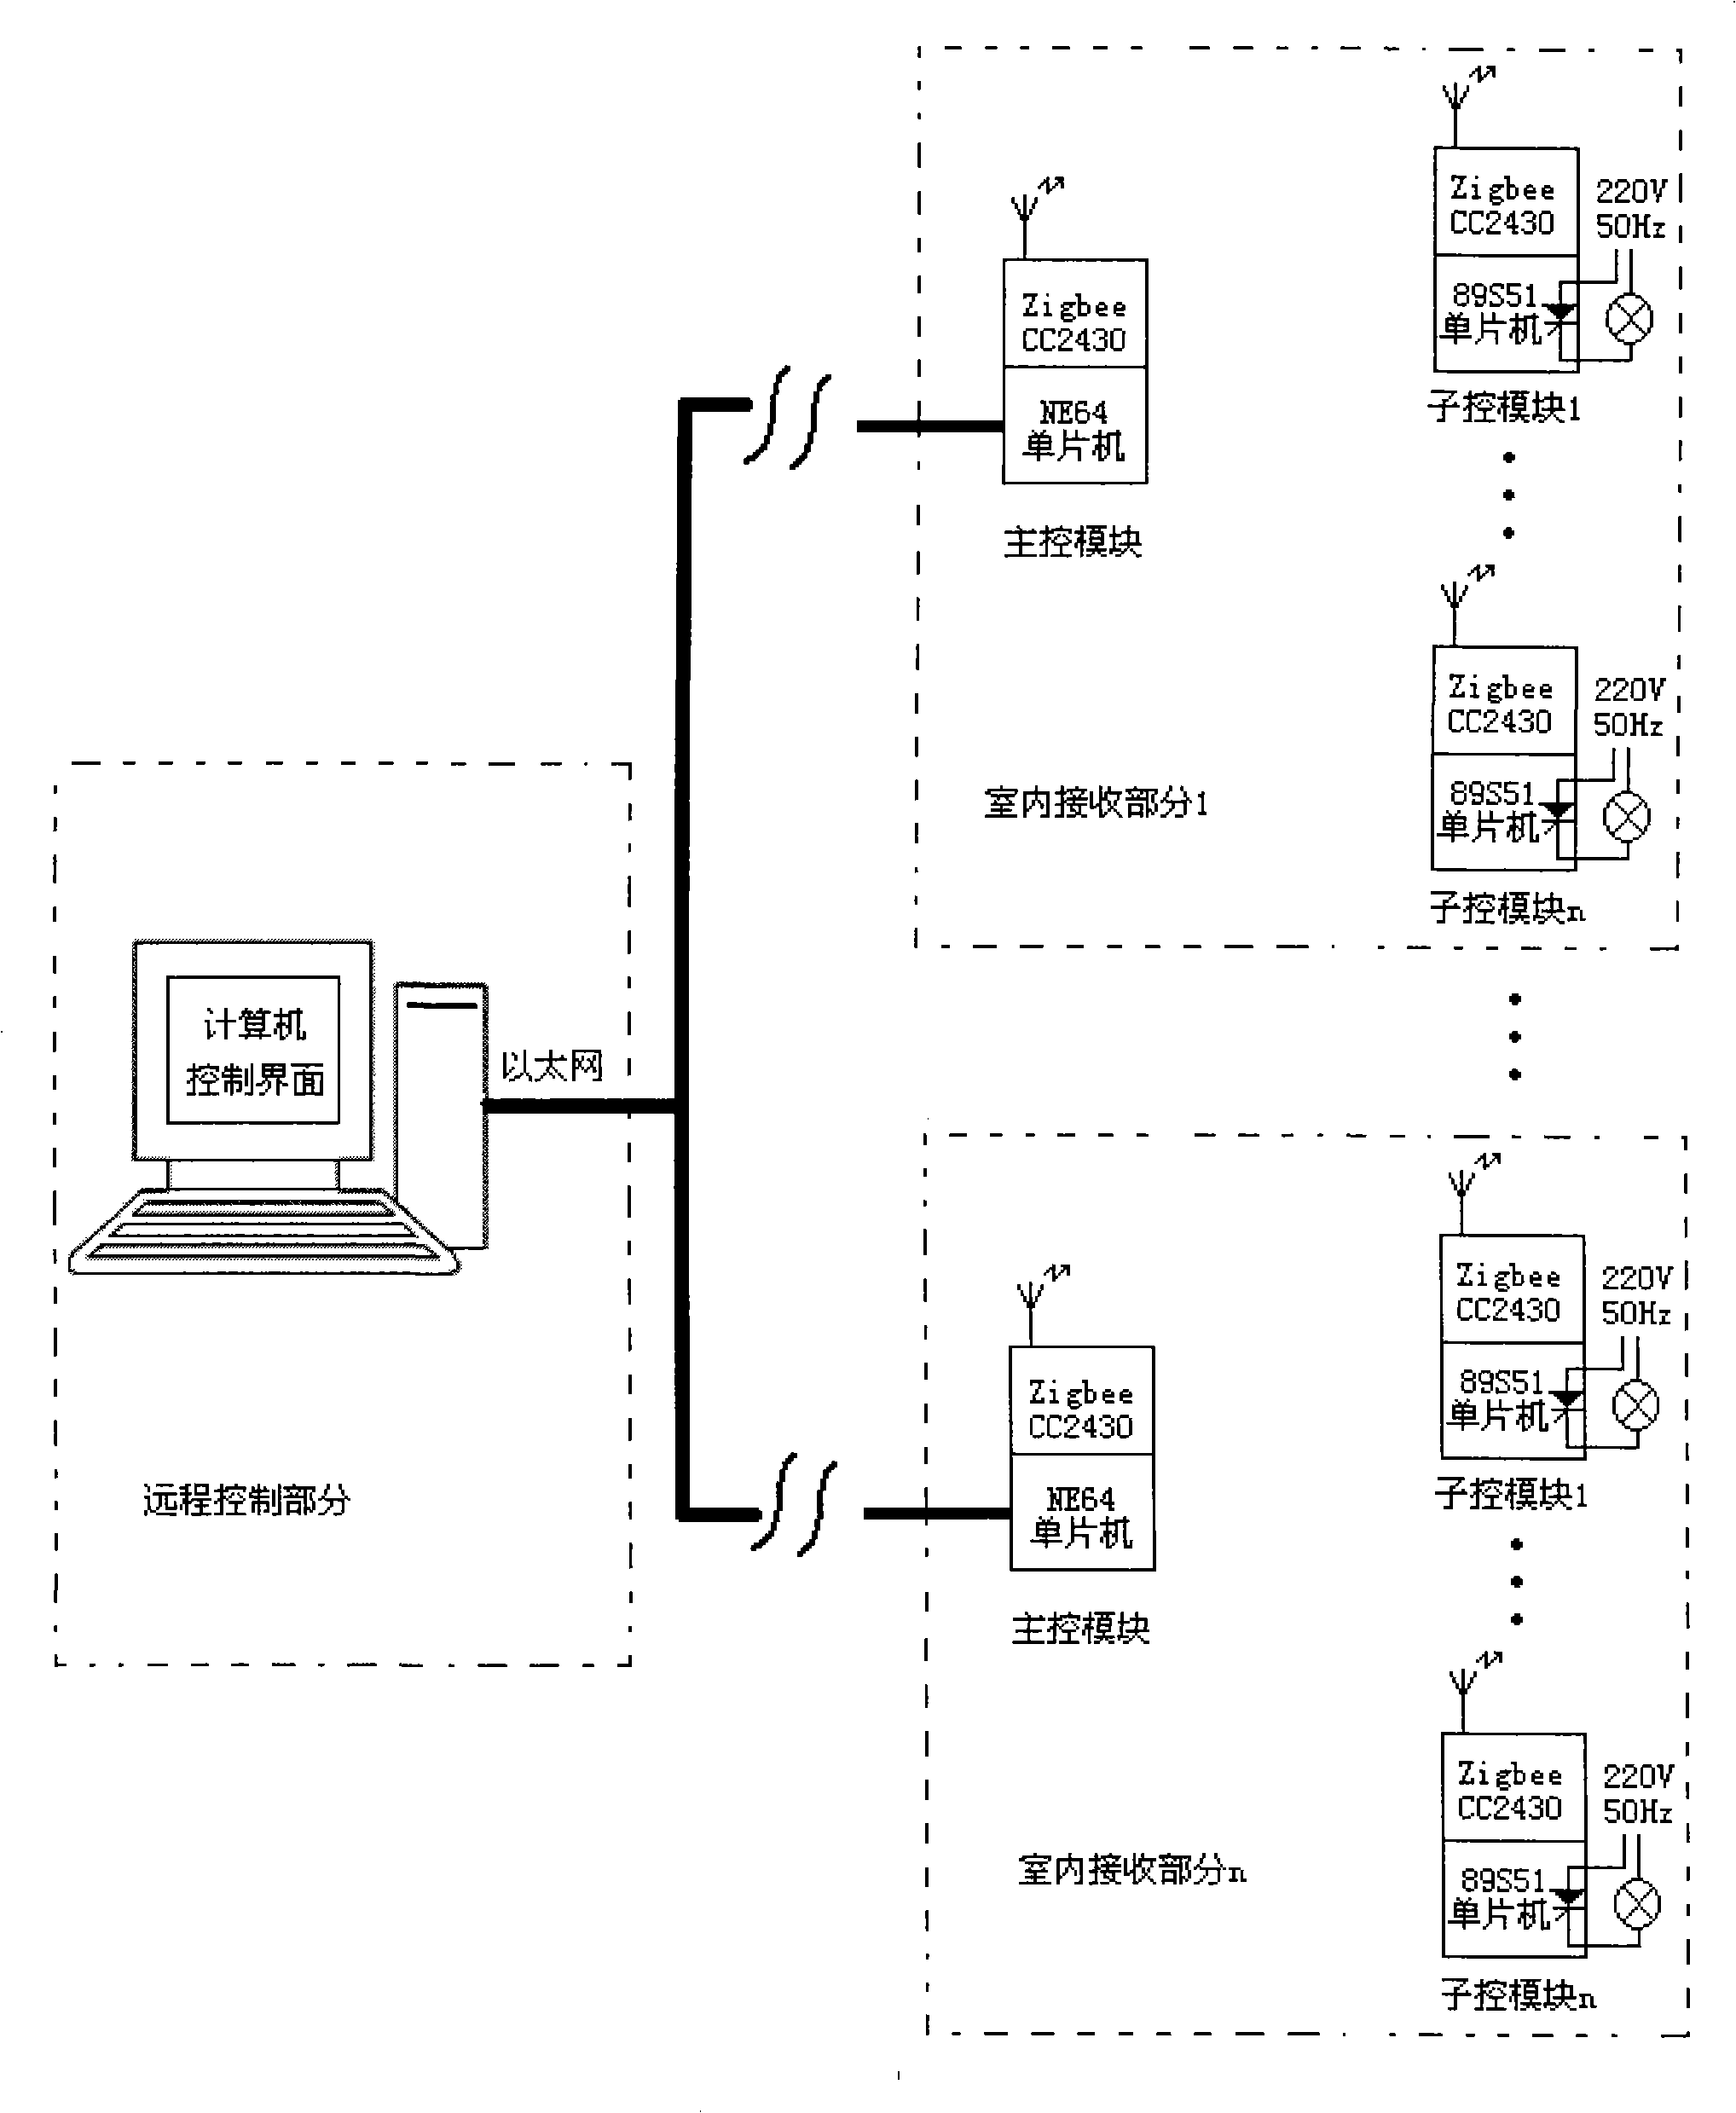 Indoor light long-range control system based on Ethernet